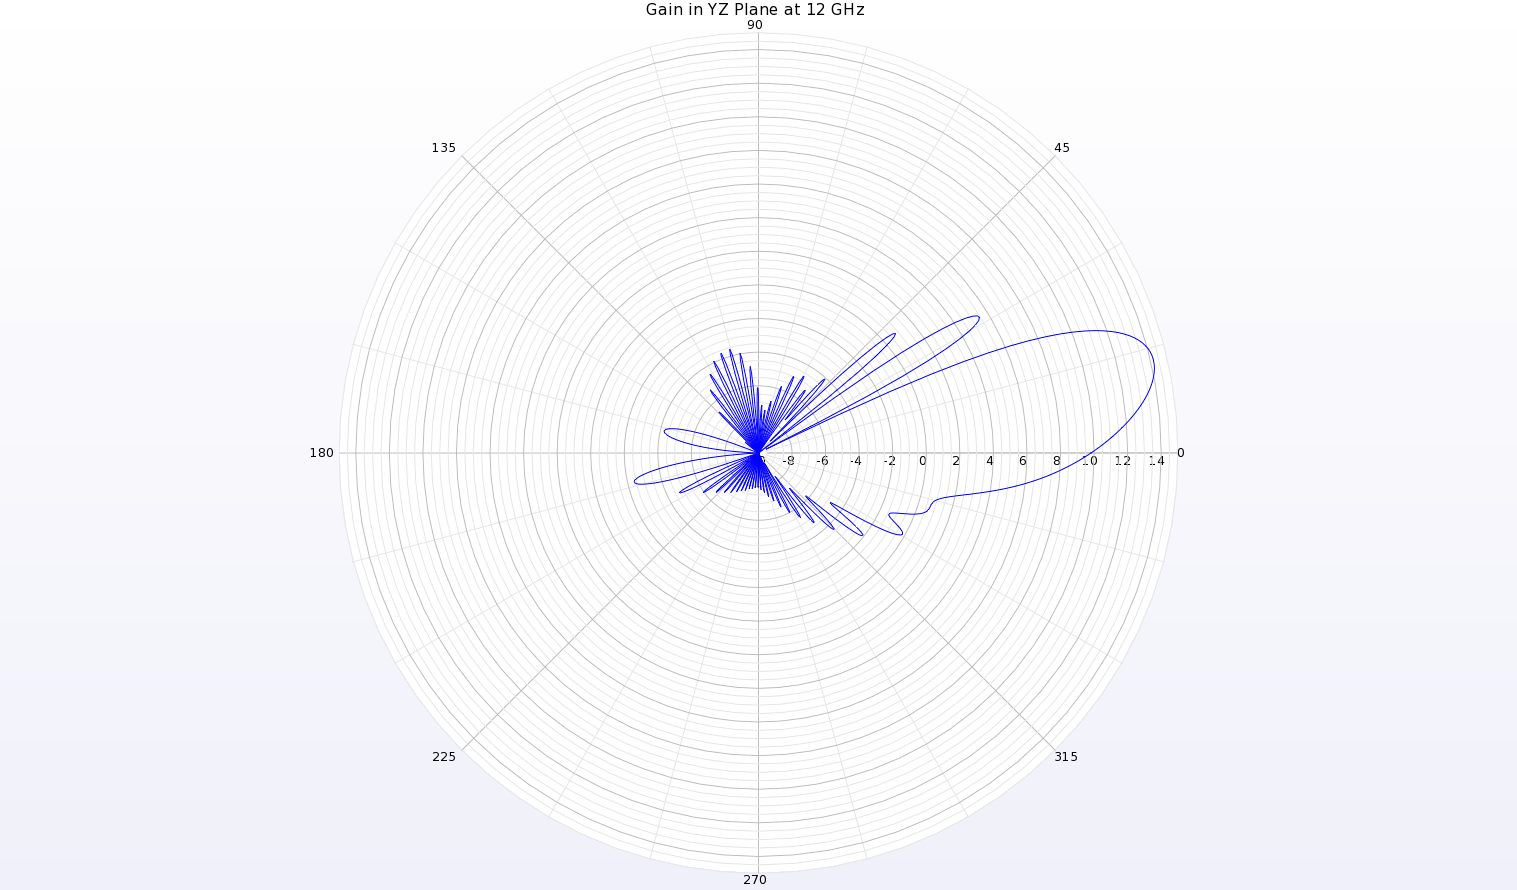 Figura 19: Un diagrama polar del diagrama de ganancia a 12 GHz en el plano YZ de la antena muestra un haz en theta=13 grados con una ganancia de pico de 14,2 dBi.